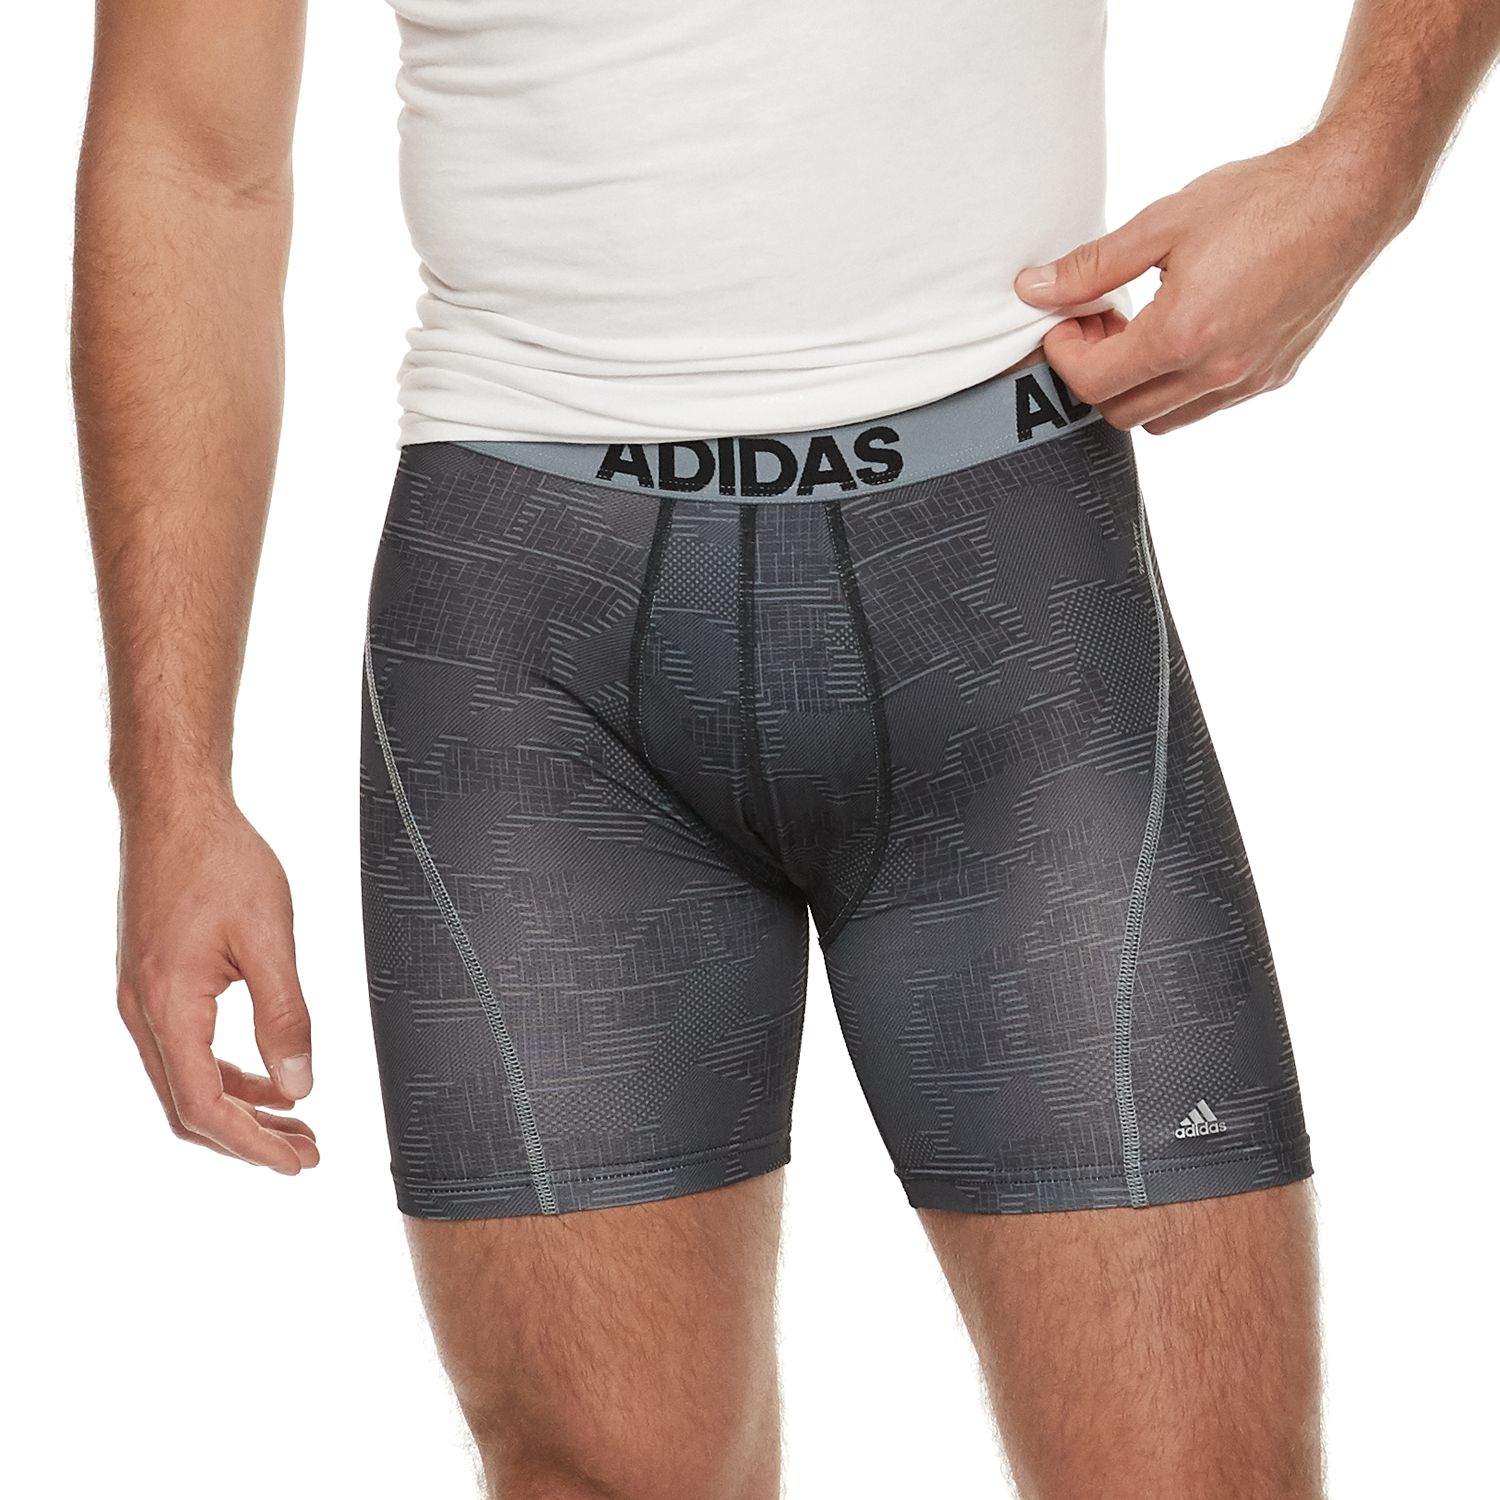 adidas men's climacool 7 midway briefs underwear